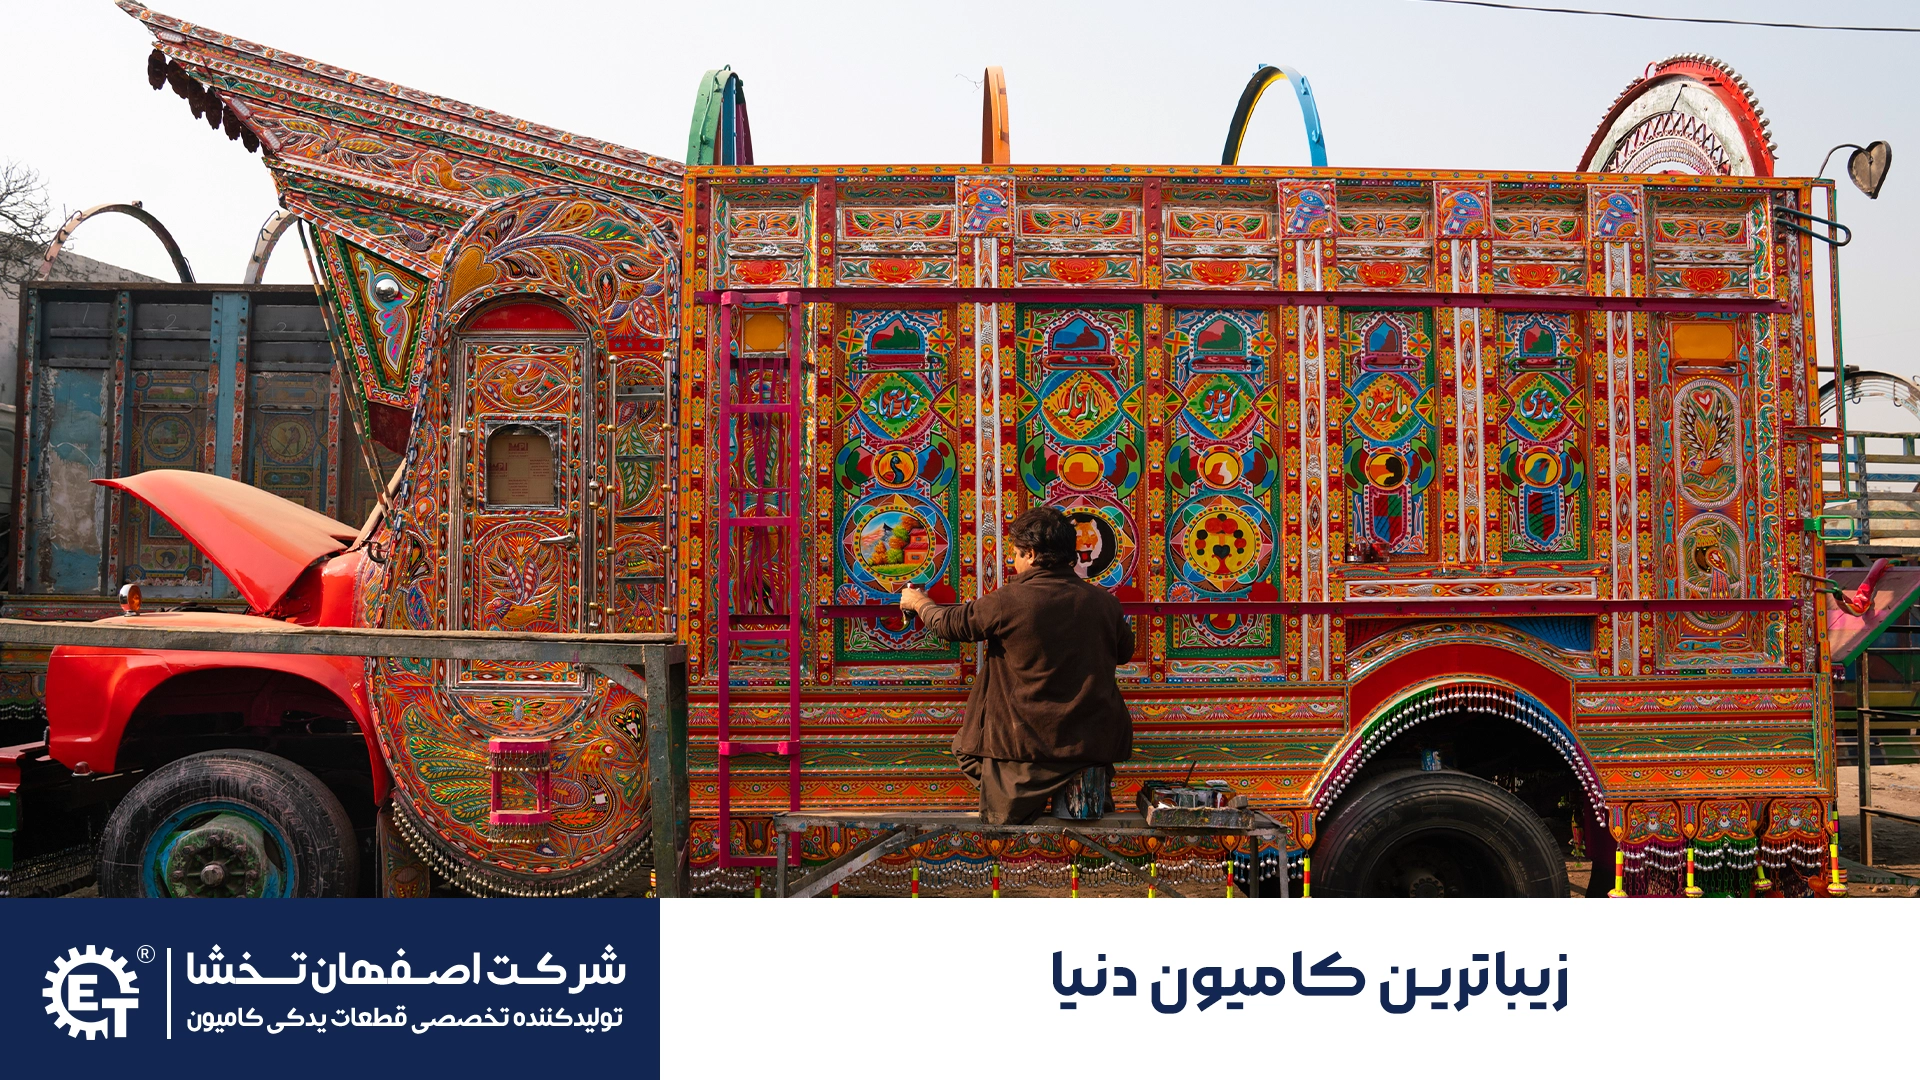 زیباترین کامیون جهان - اصفهان تخشا